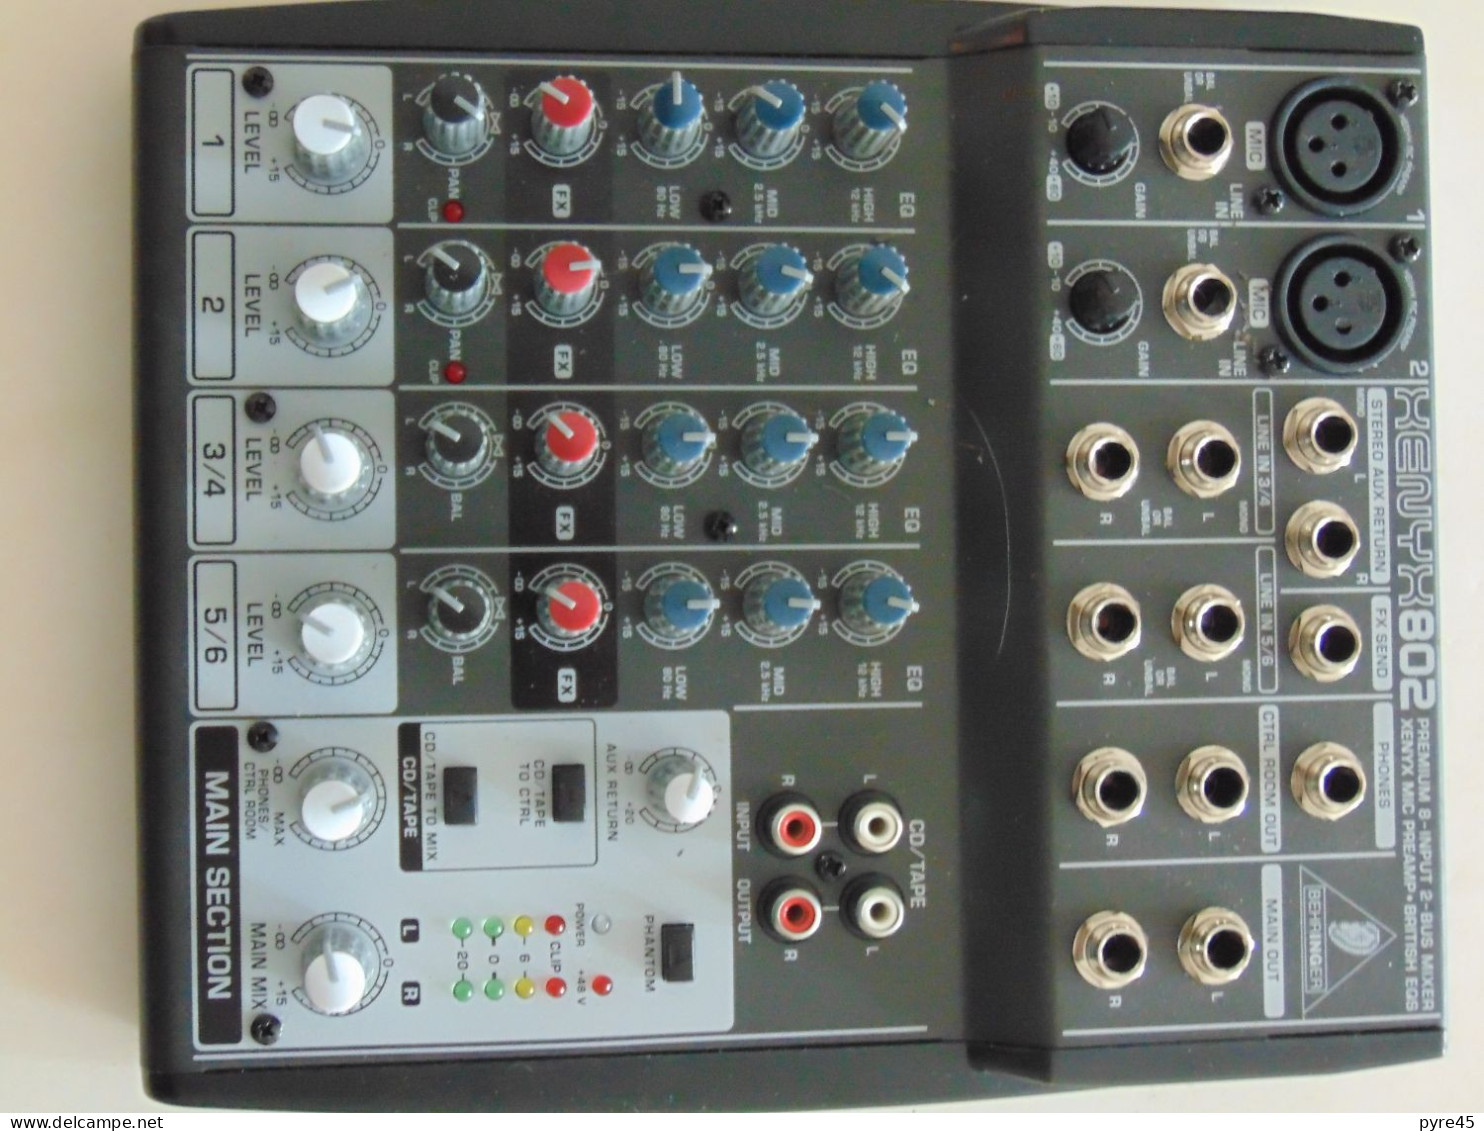 Table de mixage analogique 8 canaux, Behringer XENYX 802